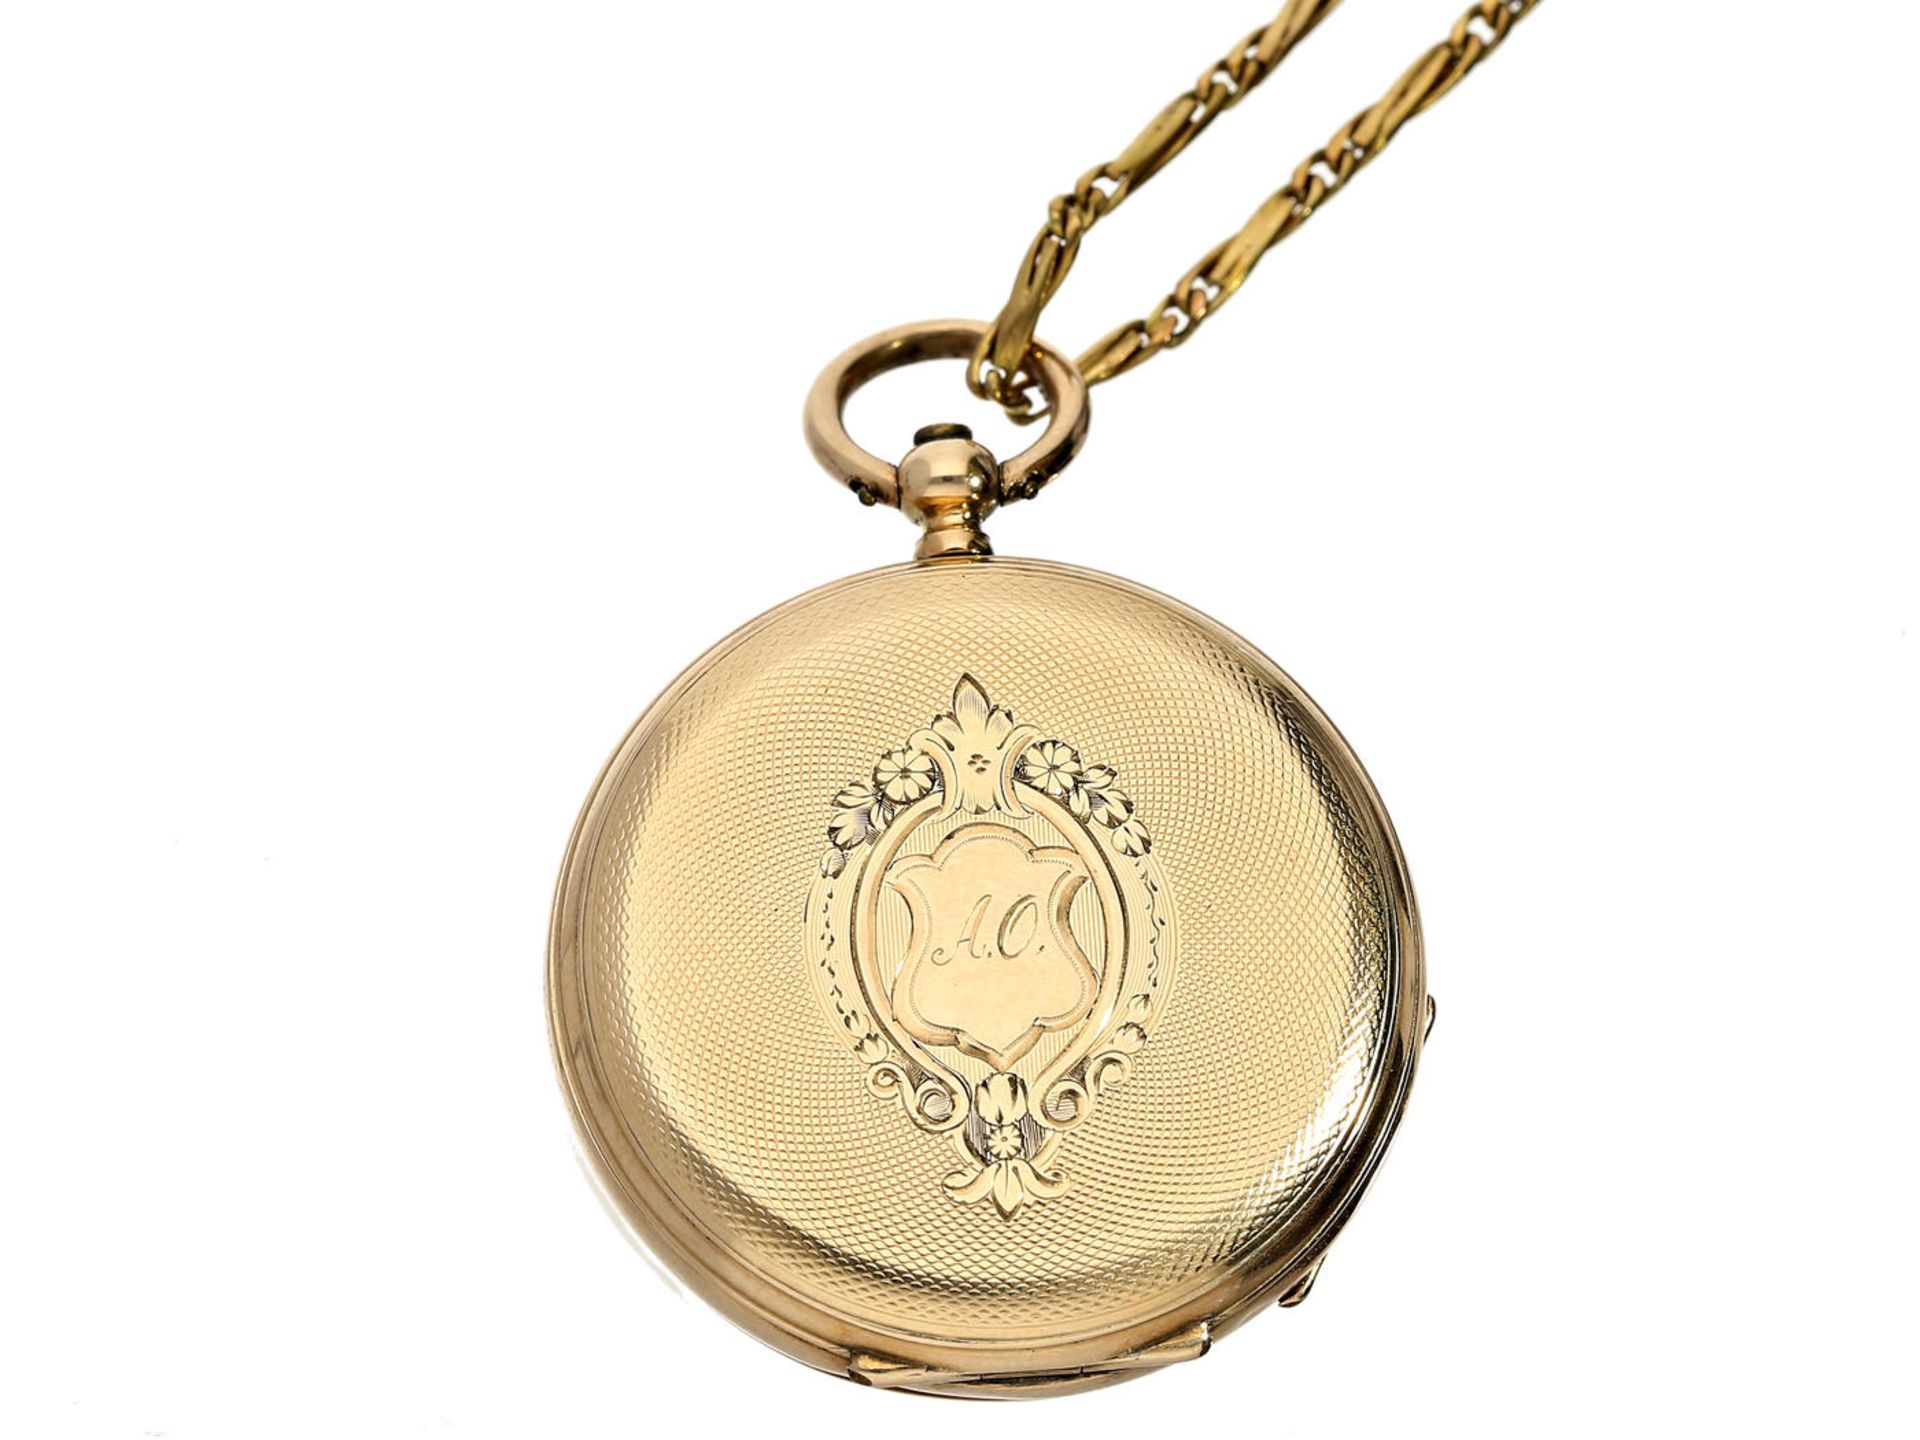 Taschenuhr/Anhängeuhr: feine Damenuhr mit dazugehöriger goldener Uhrenkette, signiert J & C.B - Image 3 of 3